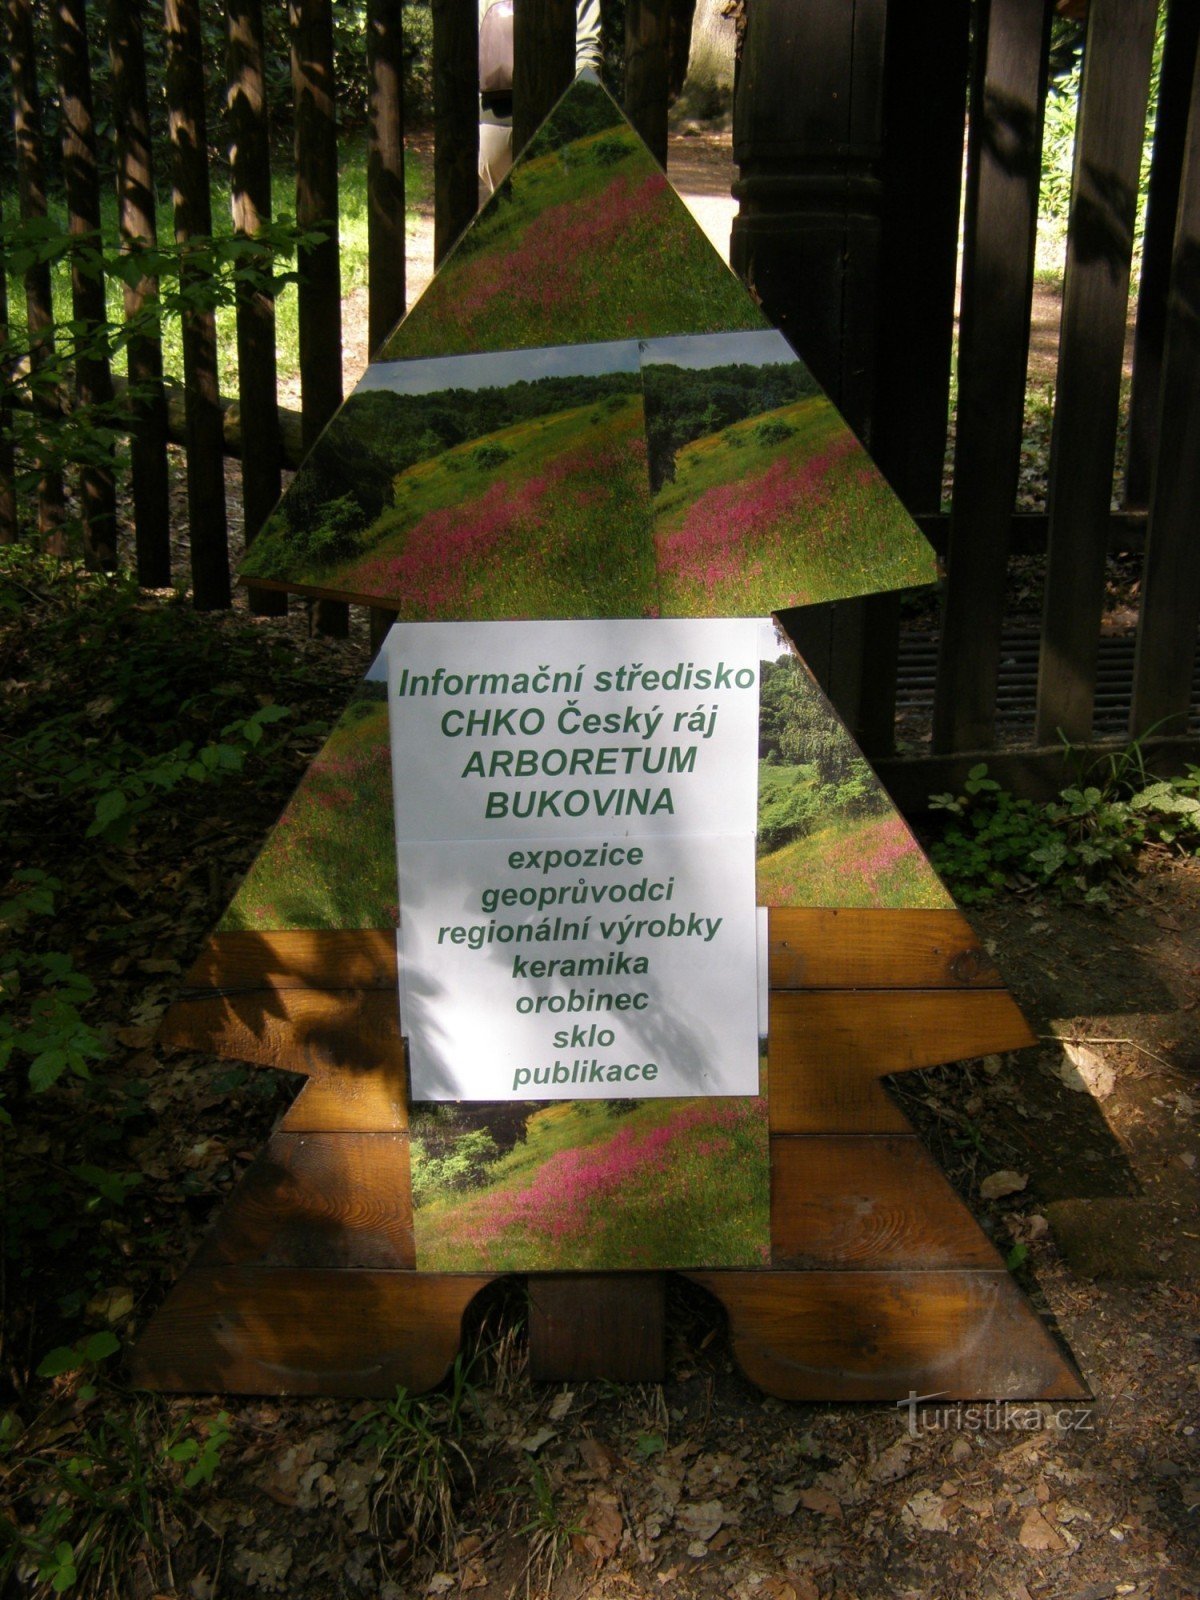 Bukovina Arboretum - 解放军波西米亚天堂的季节性信息中心